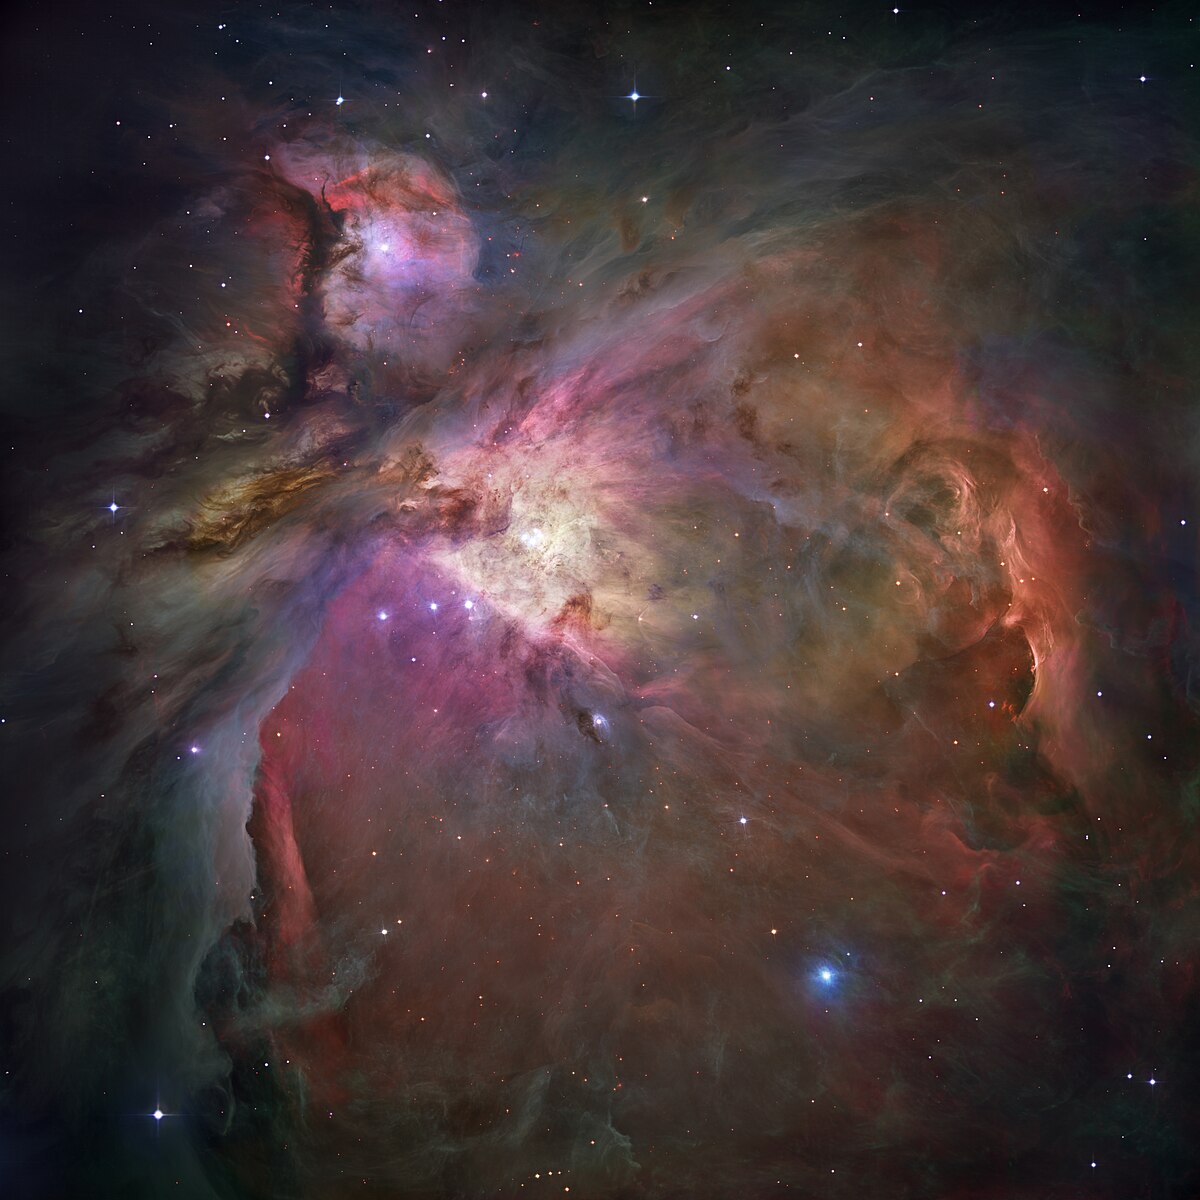 تلسكوب جيمس ويب الفضائي يرصد أجسامًا غريبة في سديم الجبار